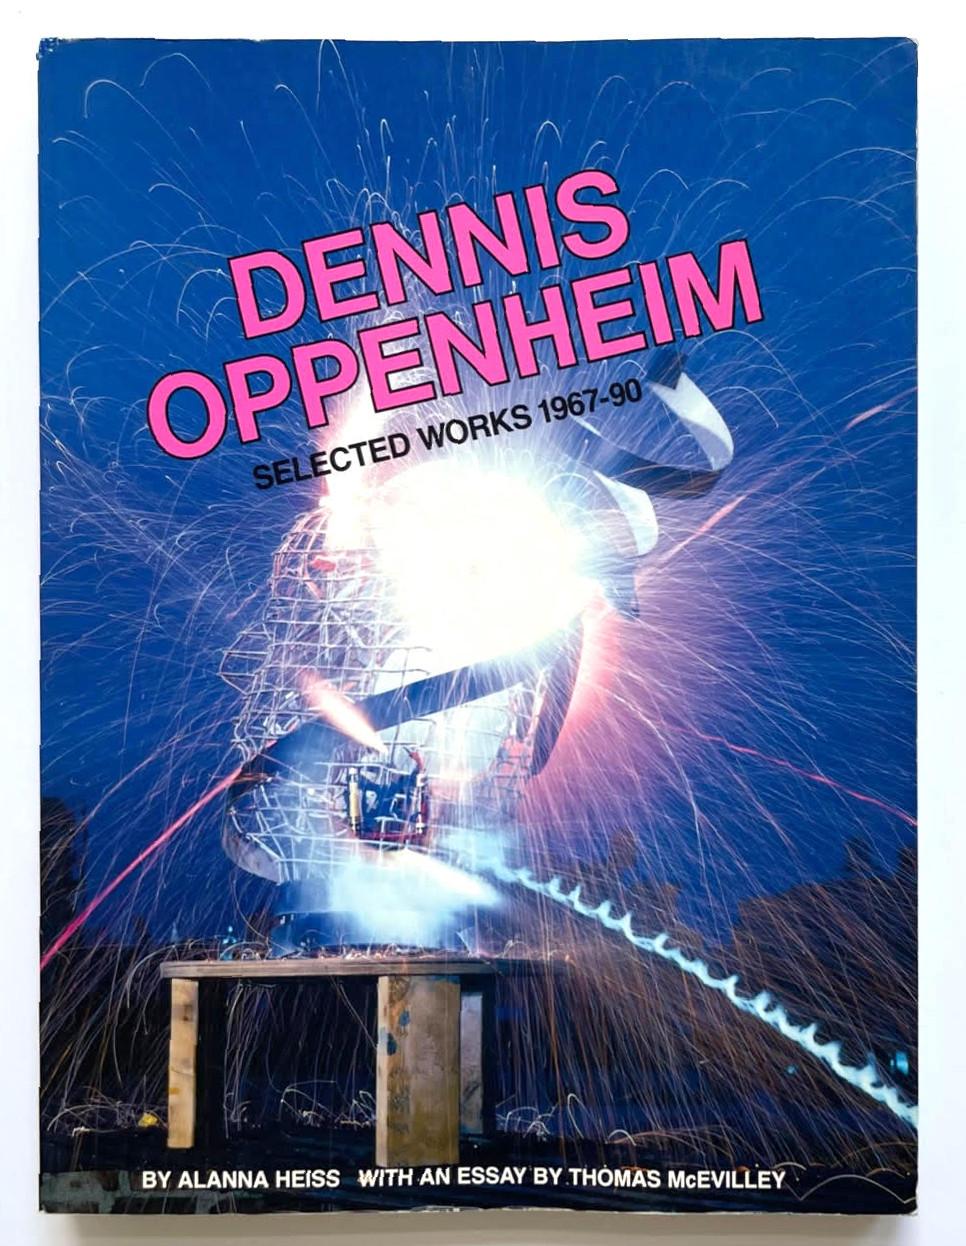 Dennis Oppenheim
Dennis Oppenheim : Selected Works 1967-90 : And the Mind Grew Fingers (avec une lettre manuscrite signée jointe séparément), 1992
Livre broché avec une lettre séparée signée à la main jointe au livre
Il contient une lettre séparée